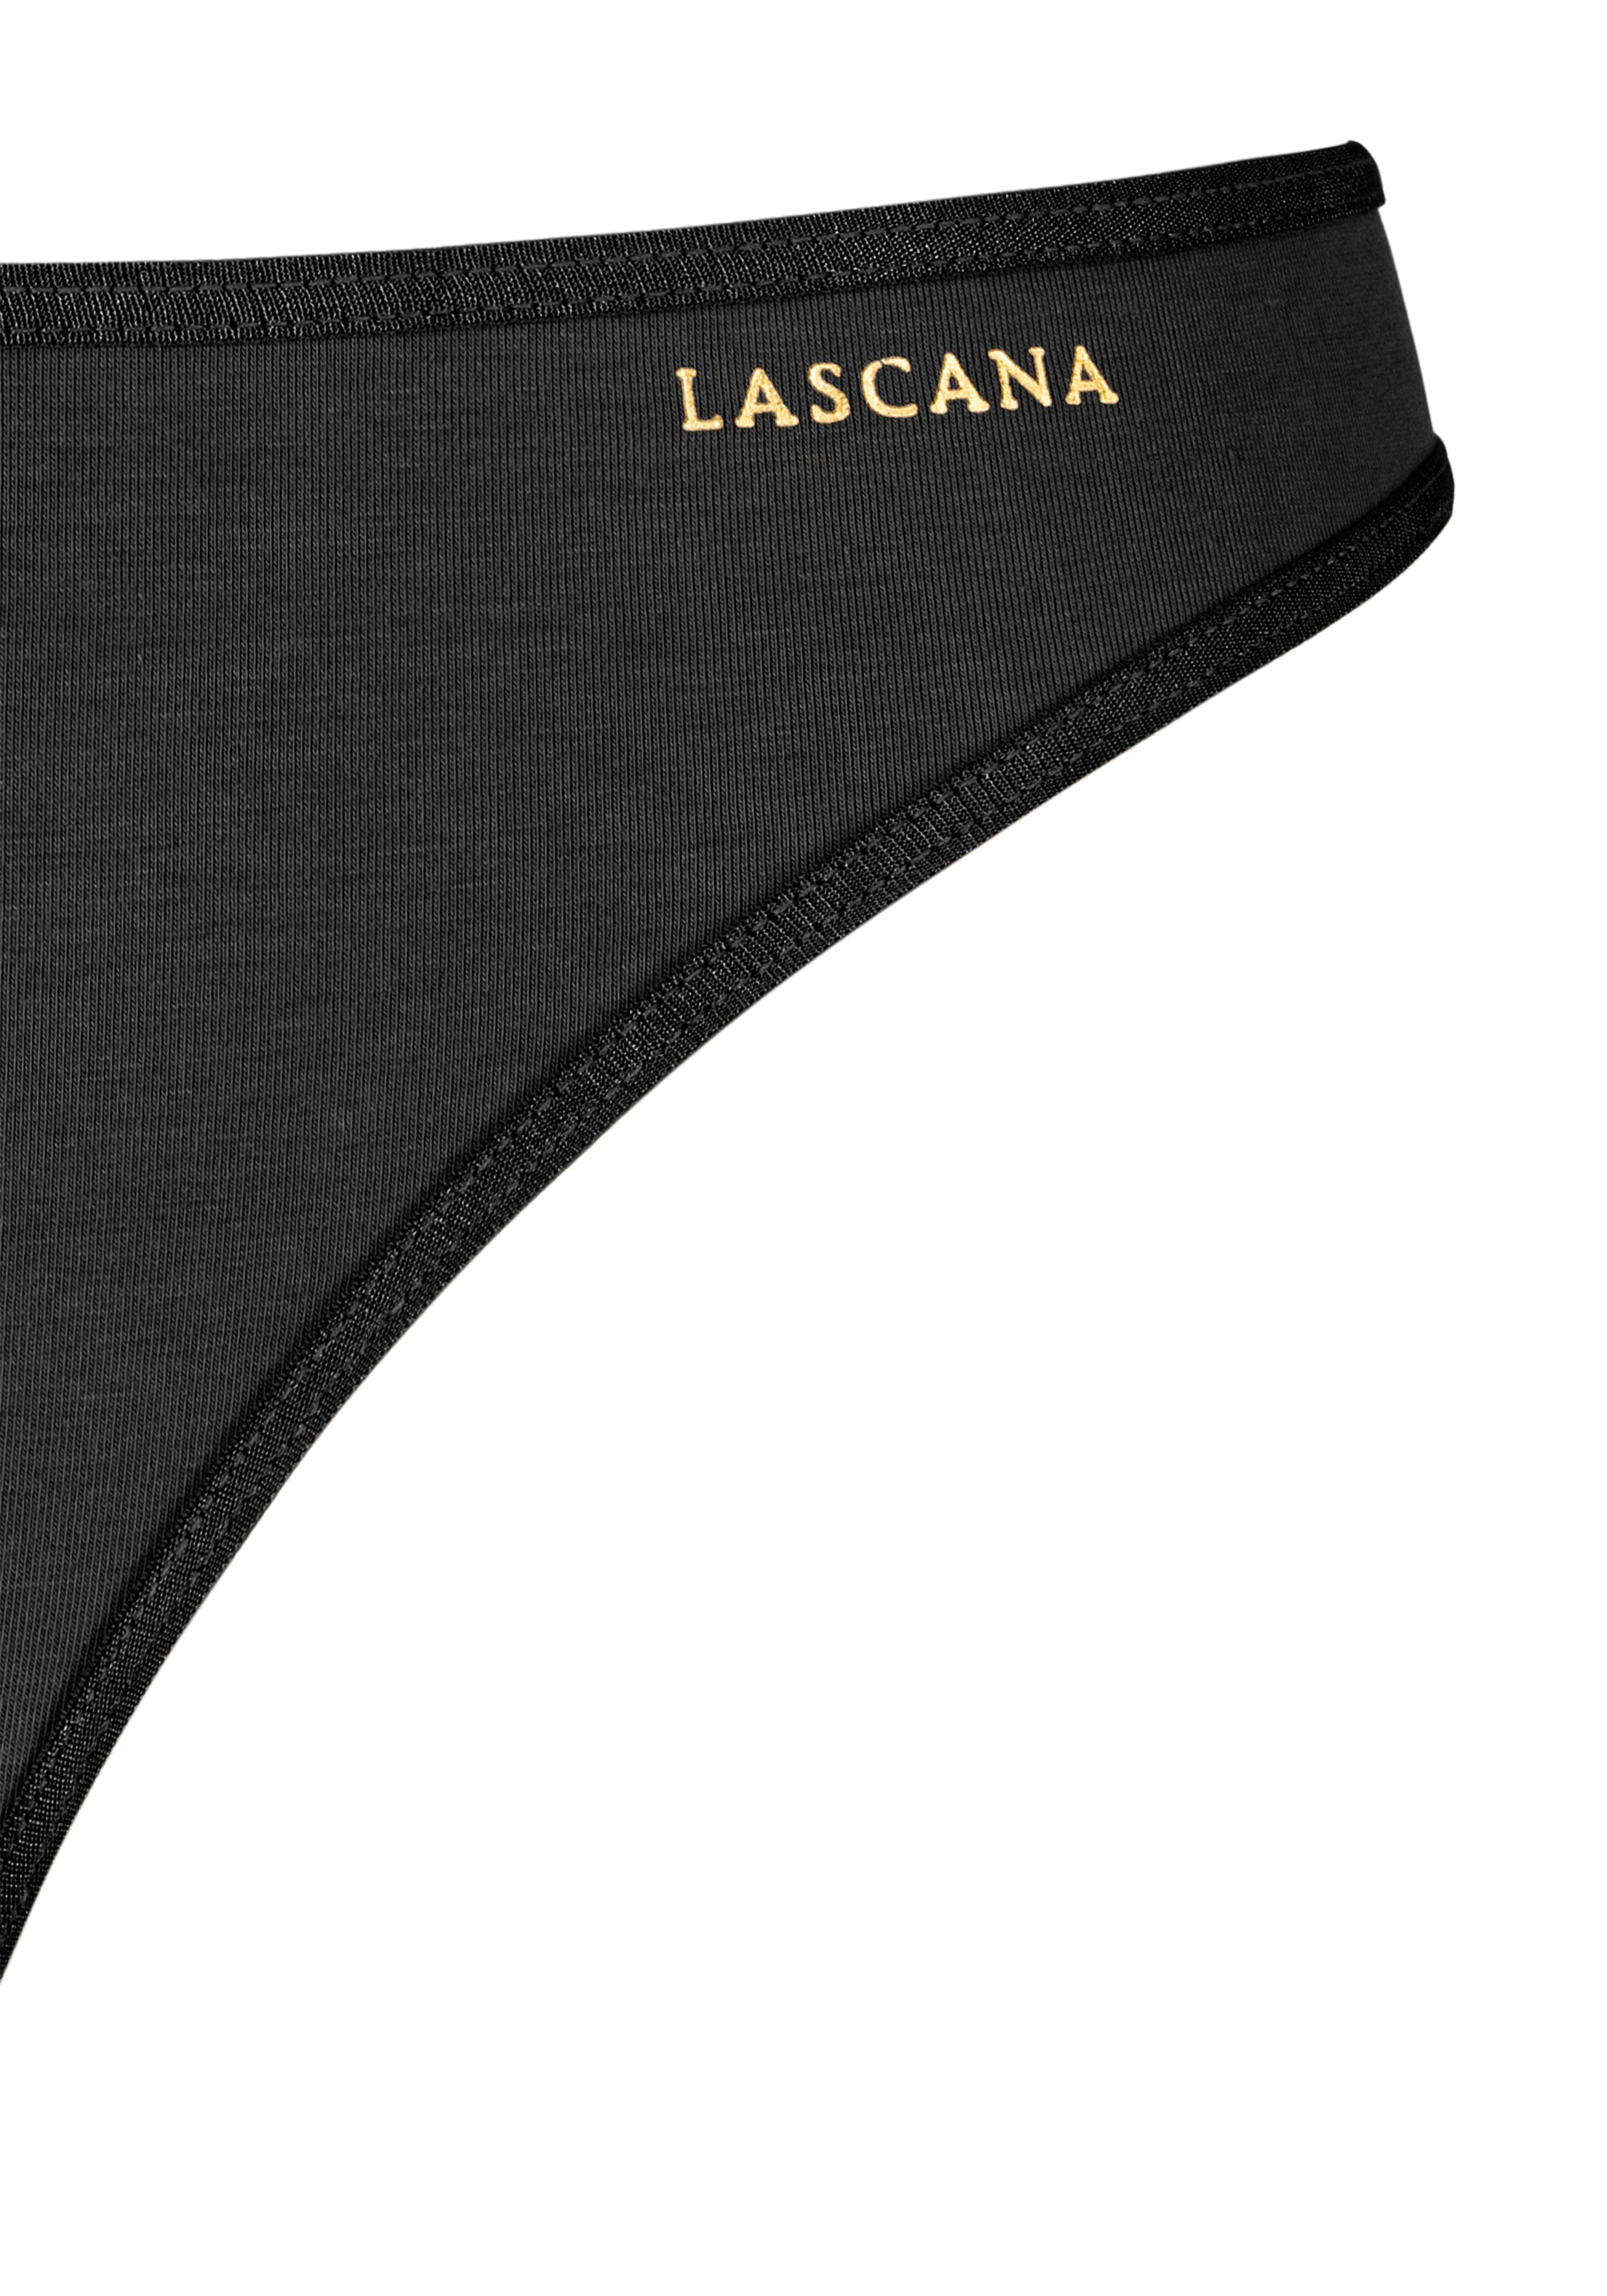 Wäsche/Bademode Unterhosen LASCANA String (3 Stück) mit goldfarbenem Logodruck